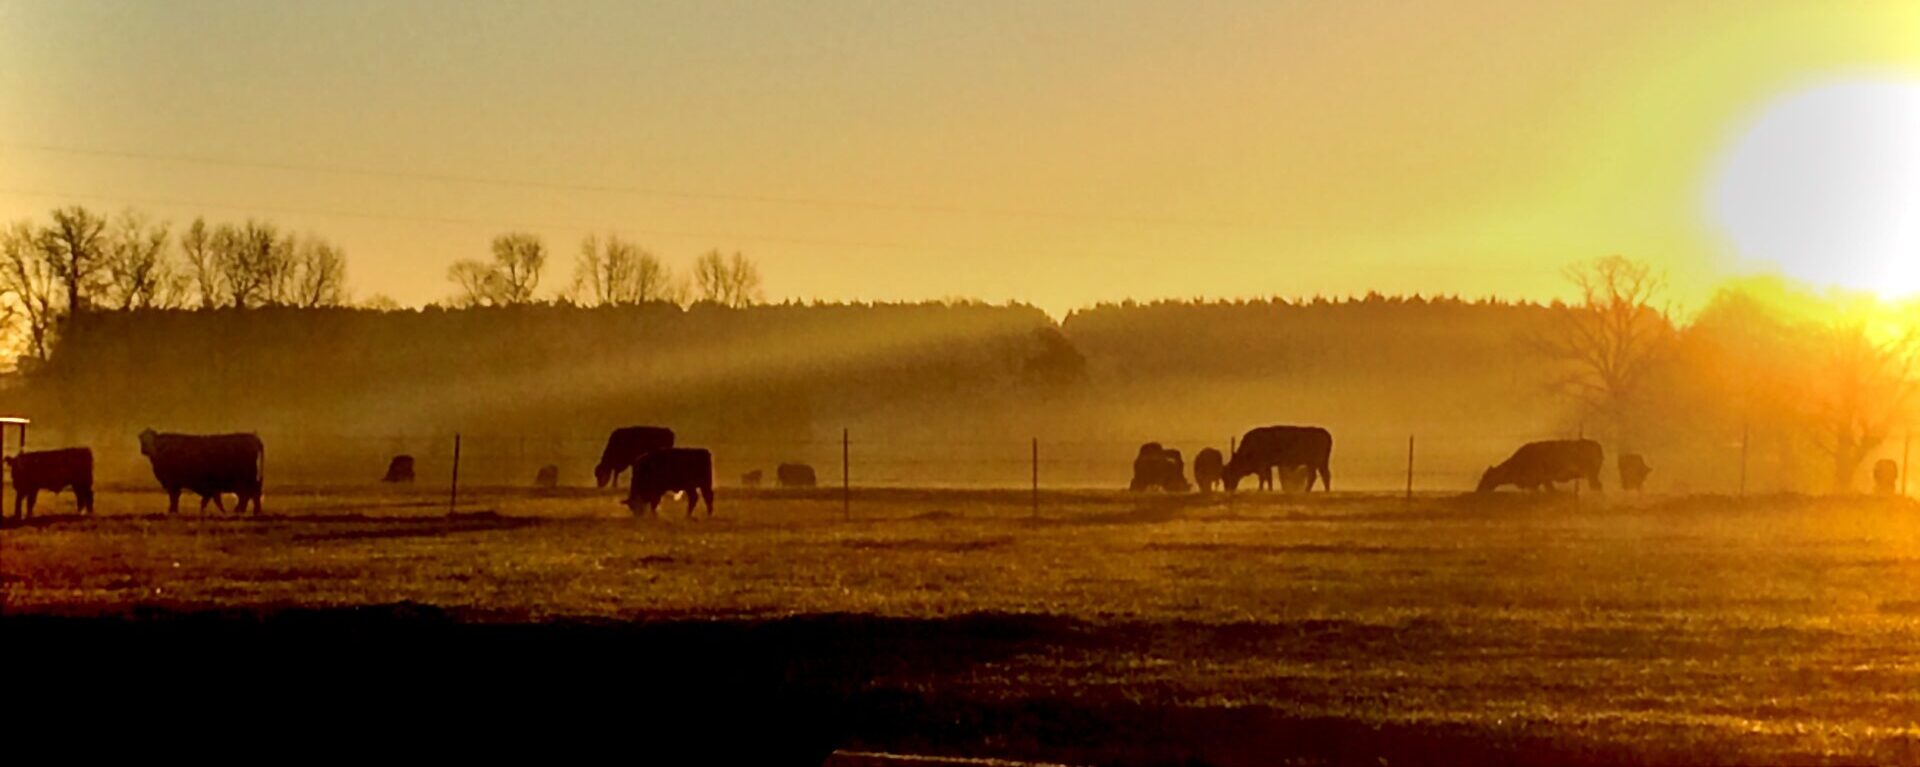 Sunrise over grazing cattle